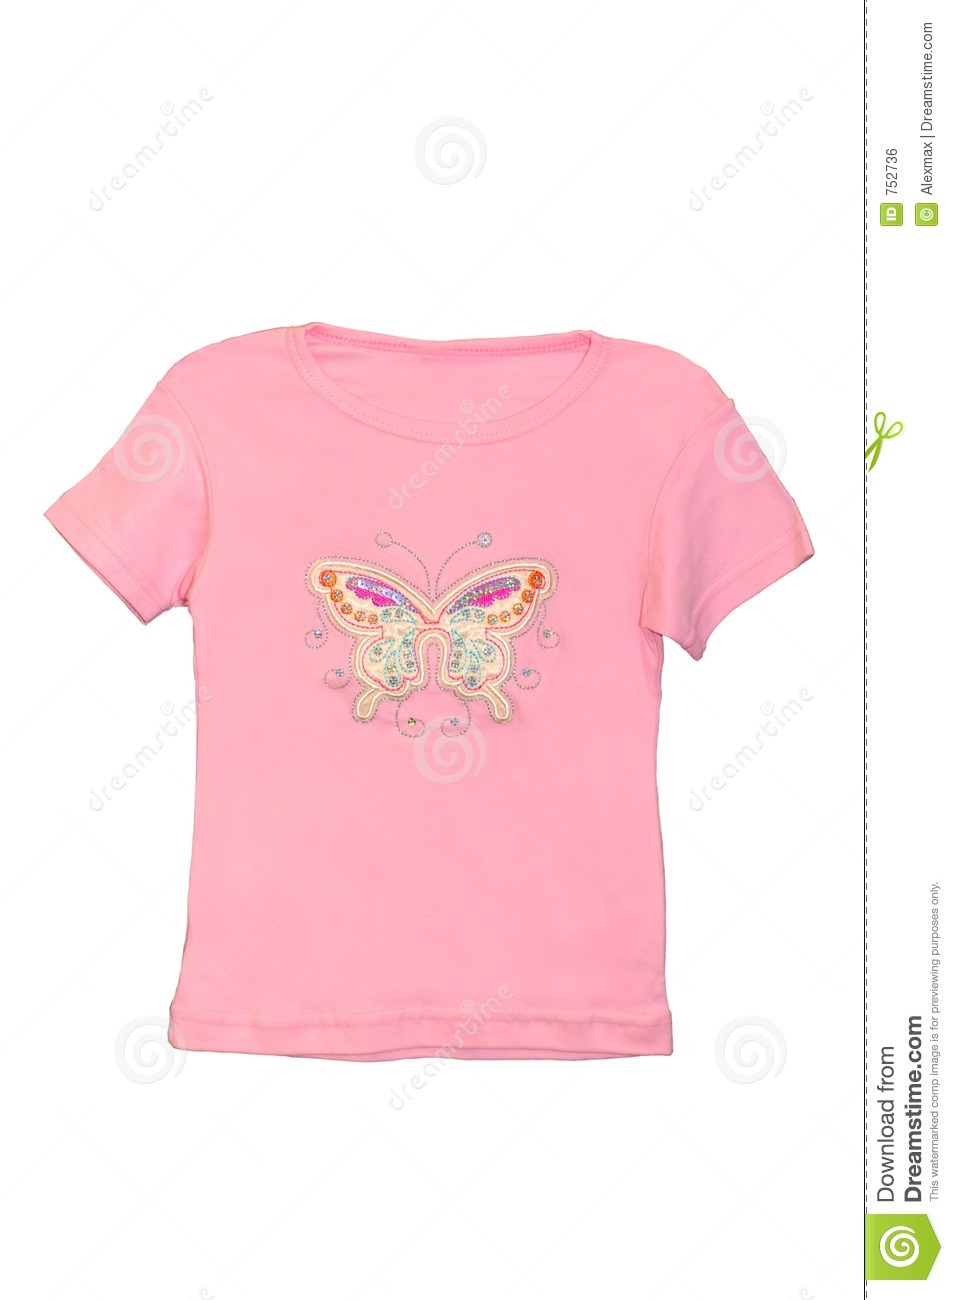 Kids Shirt Clipart Children Girl Pink T Shirt